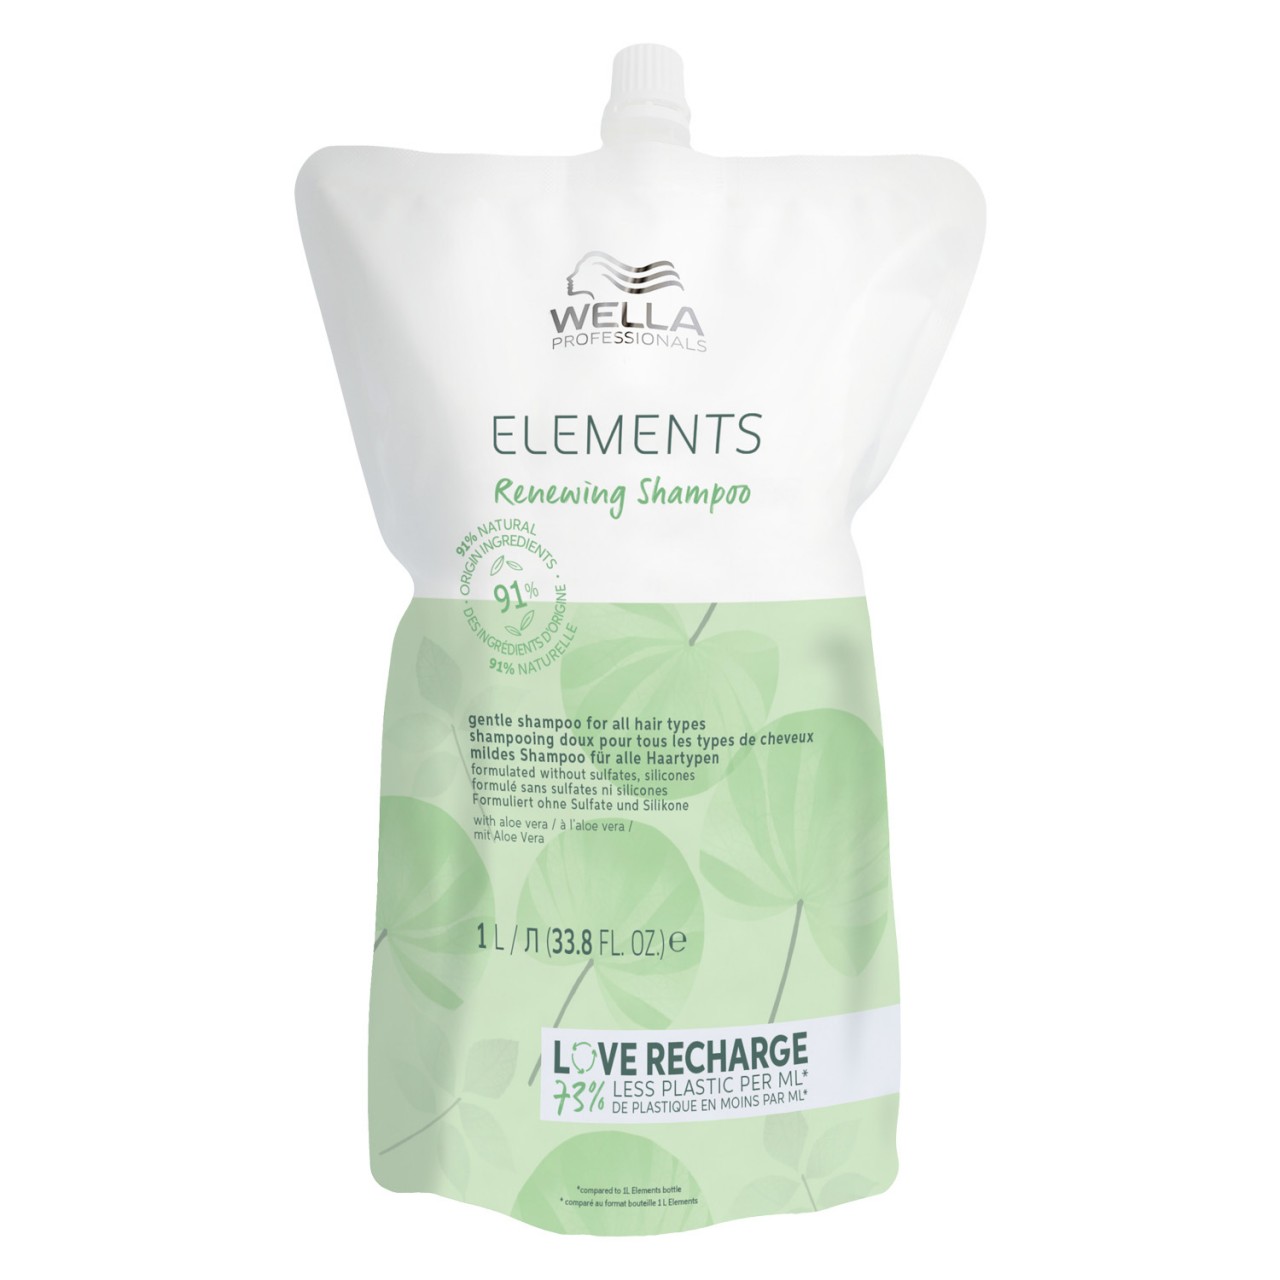 Elements - Renewing Shampoo Refill von Wella